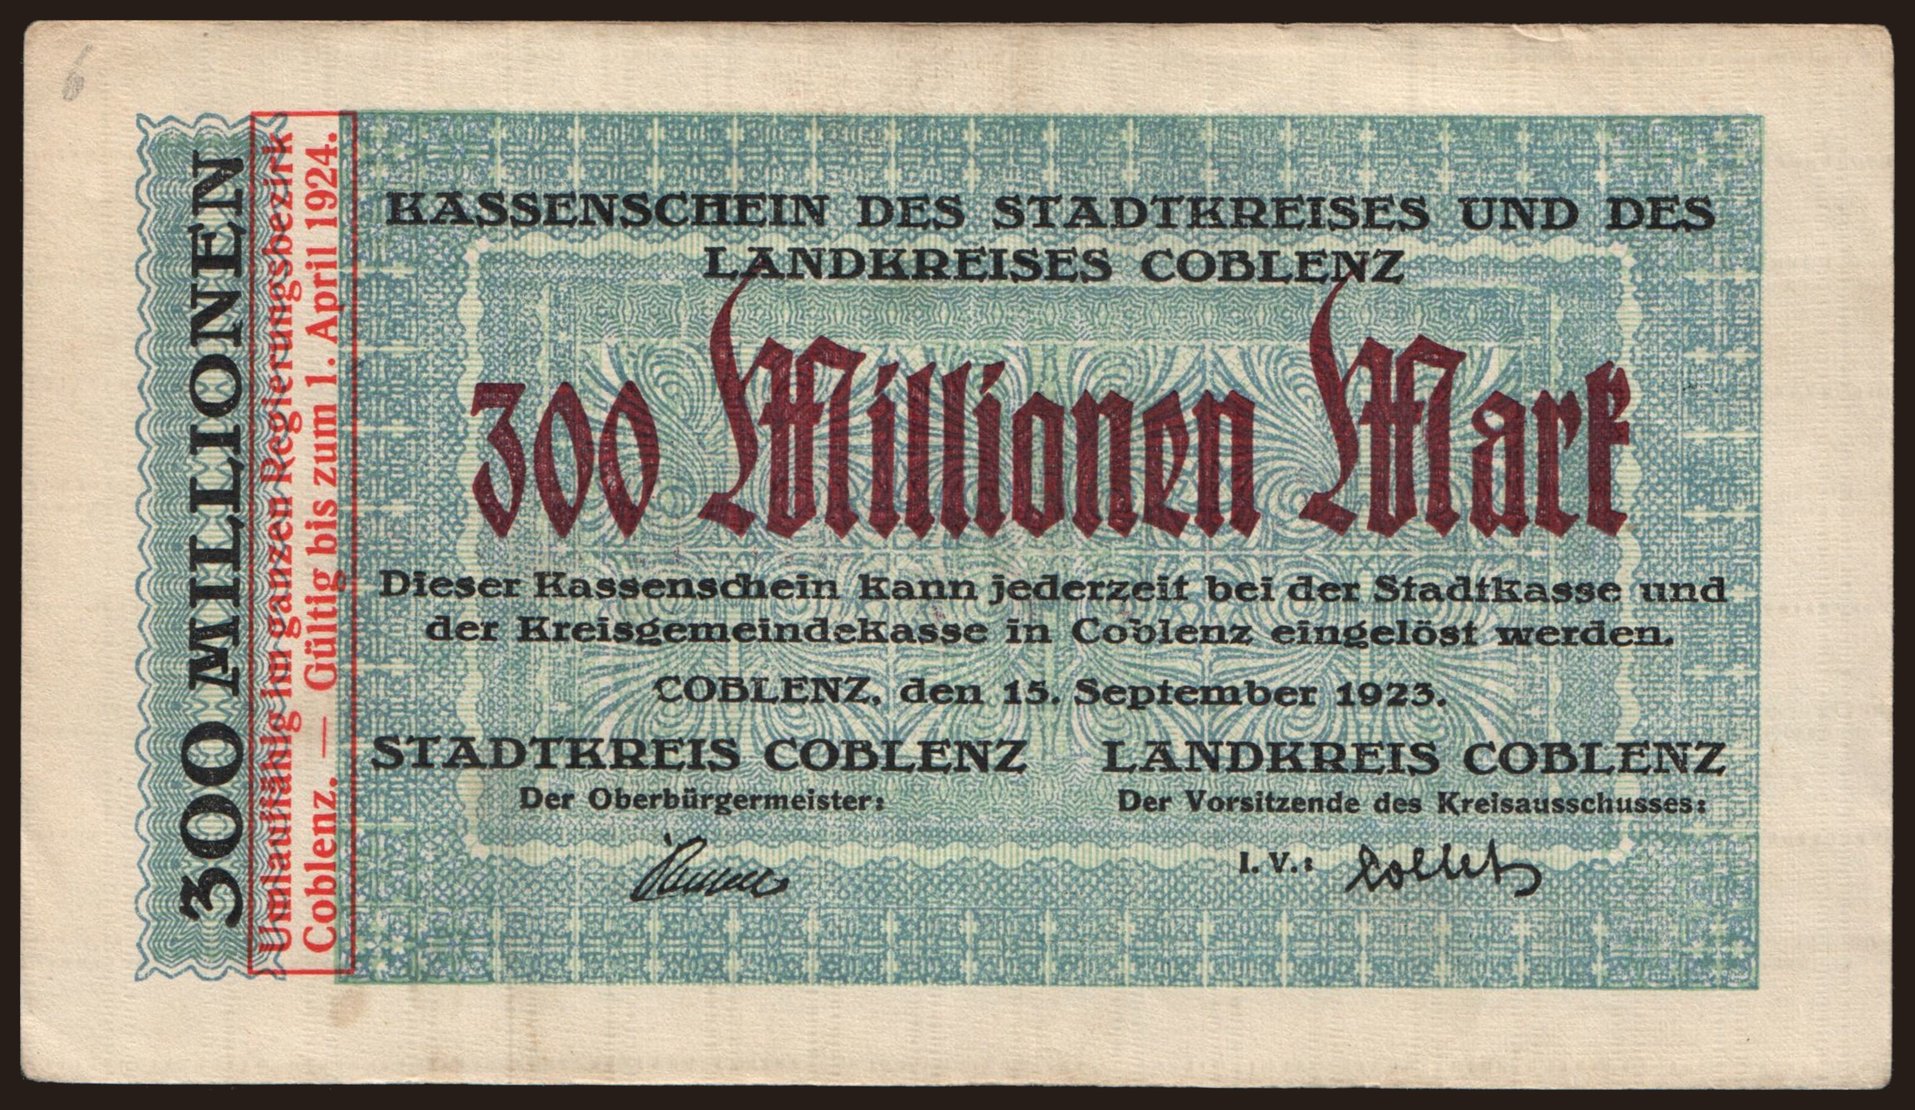 Coblenz/ Stadtkreis und Landkreis, 300.000.000 Mark, 1923